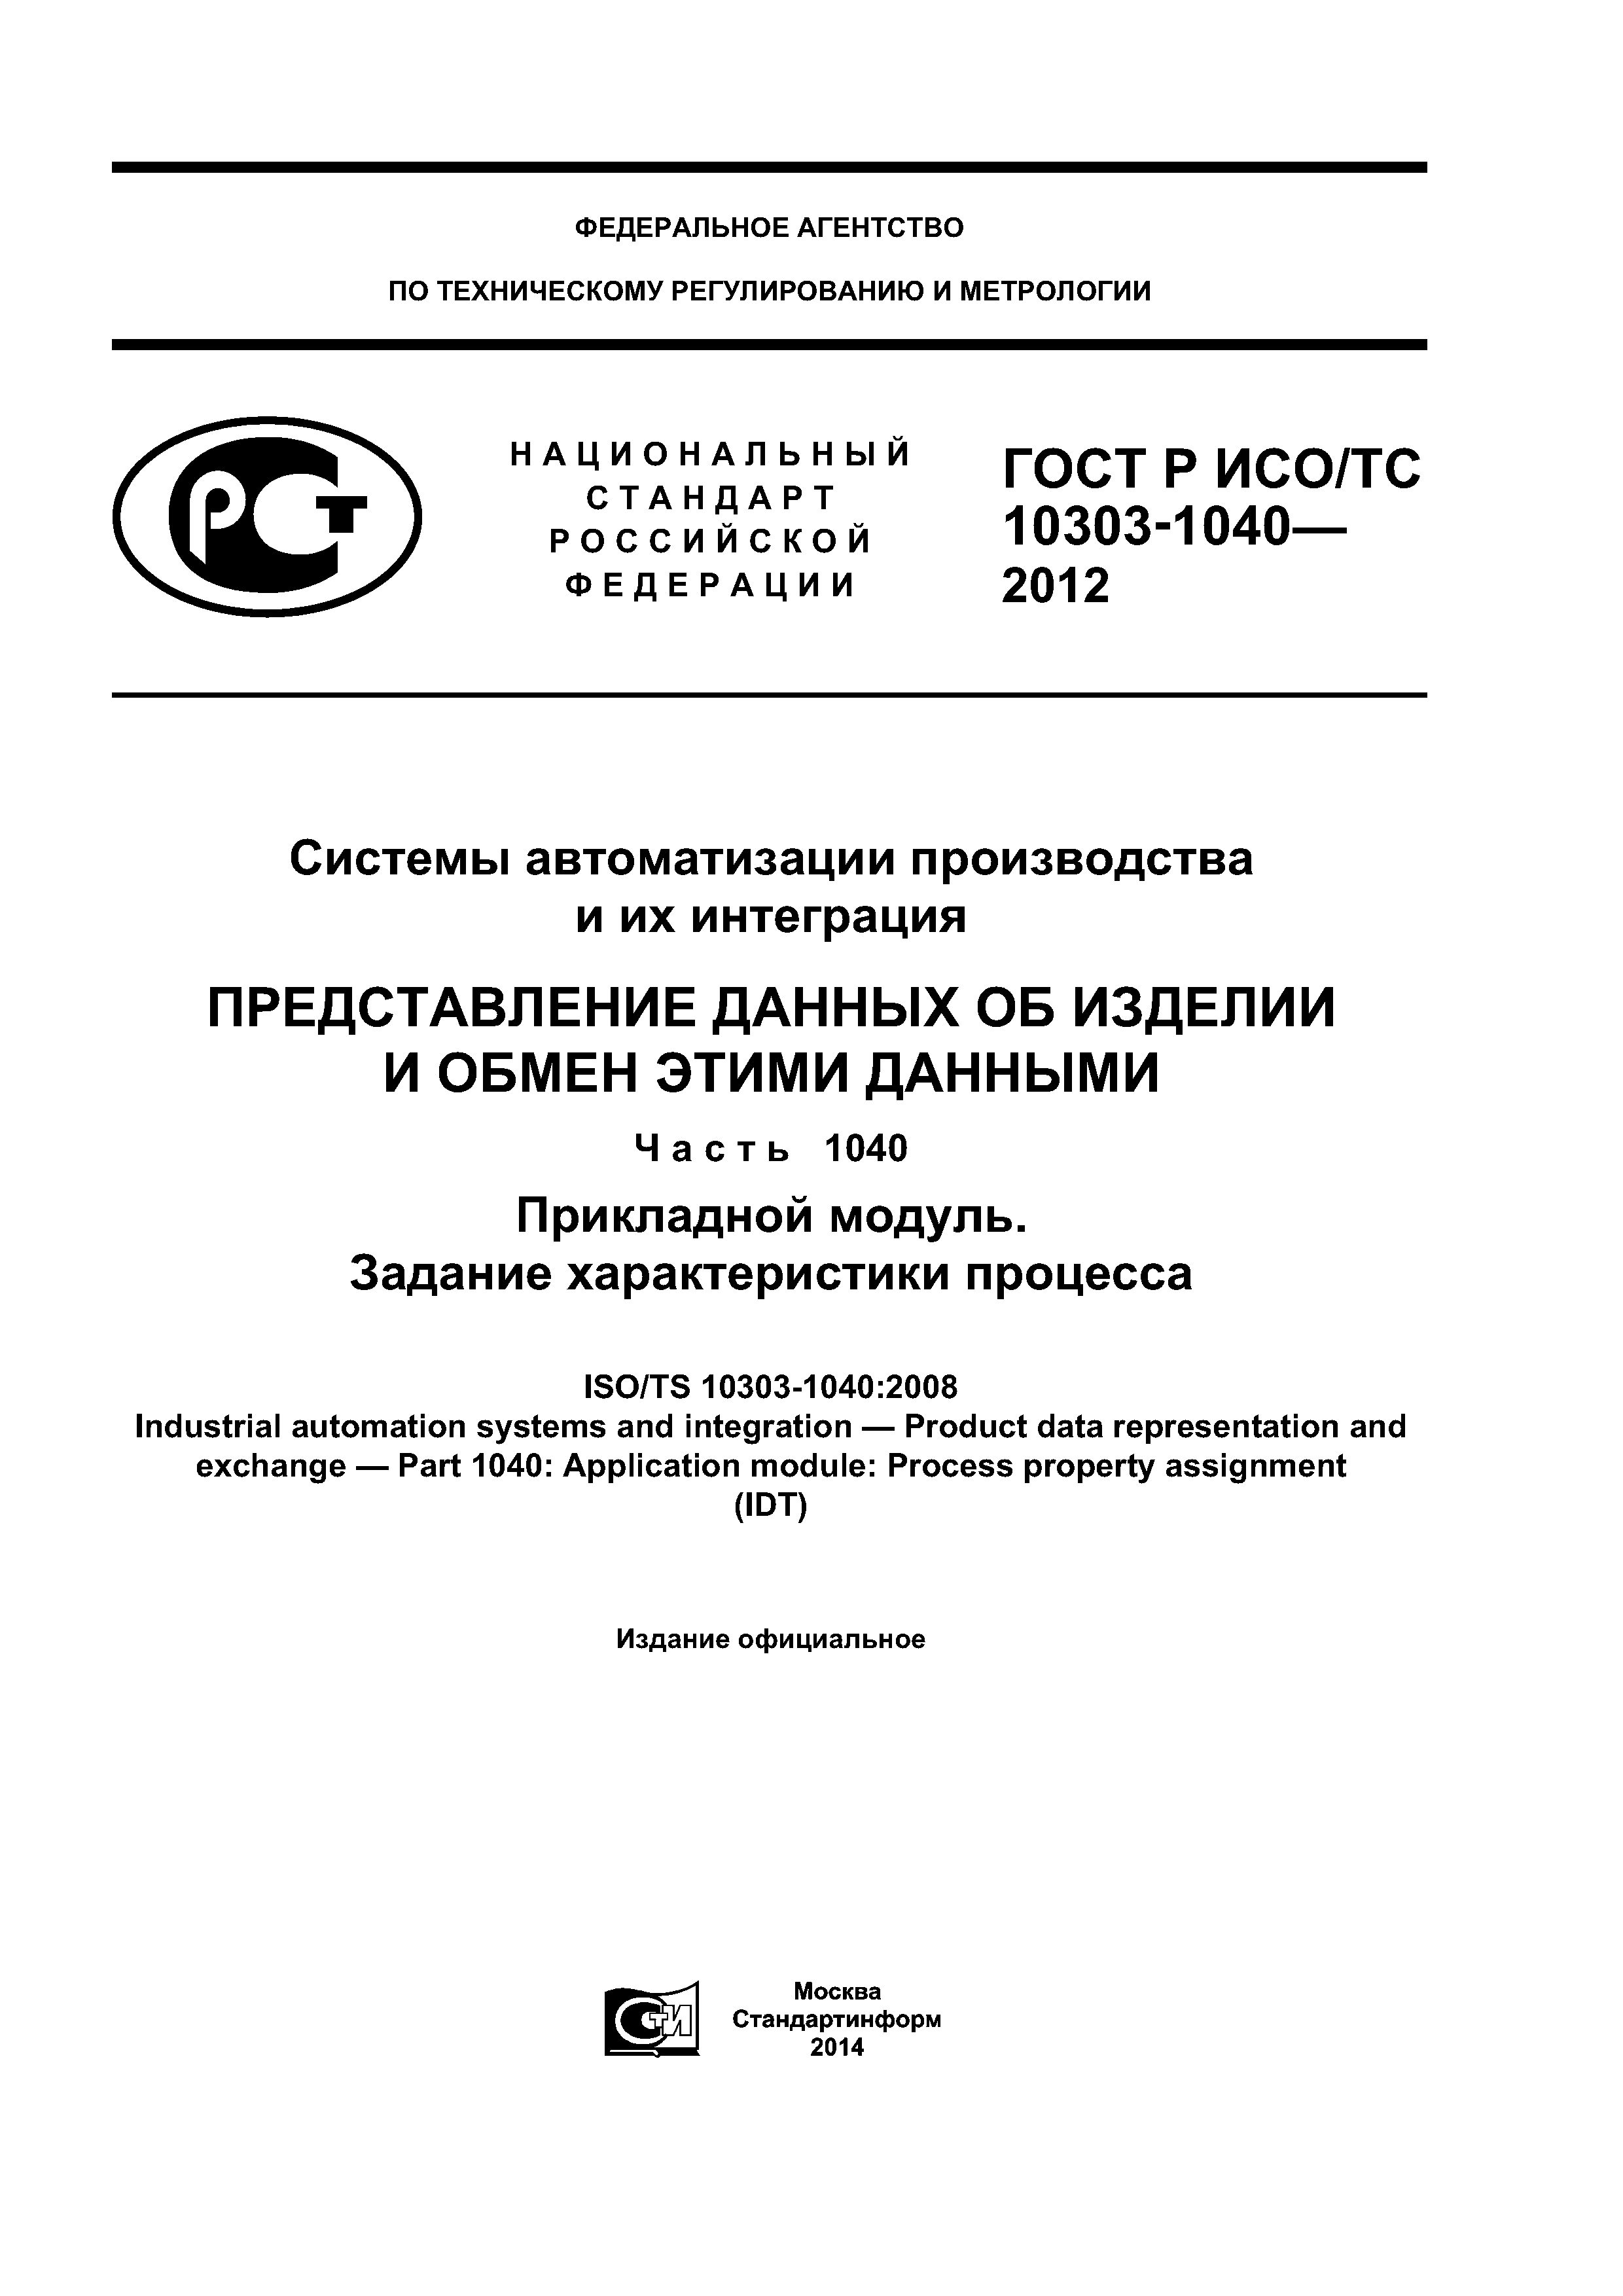 ГОСТ Р ИСО/ТС 10303-1040-2012